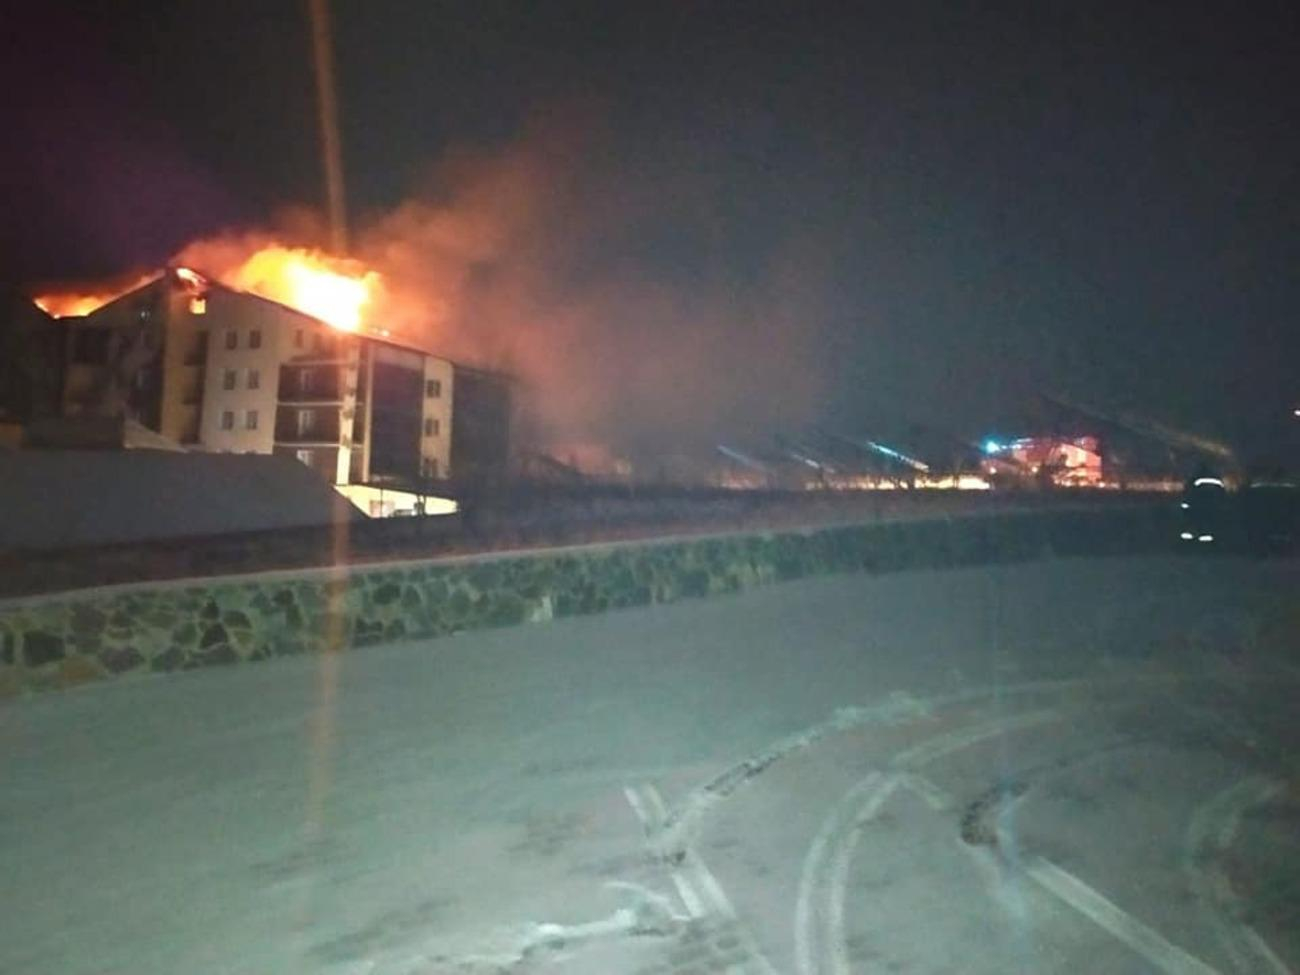 На Вінниччині спалахнув комплекс відпочинку: є жертва та постраждалі - Україна новини - 24 Канал